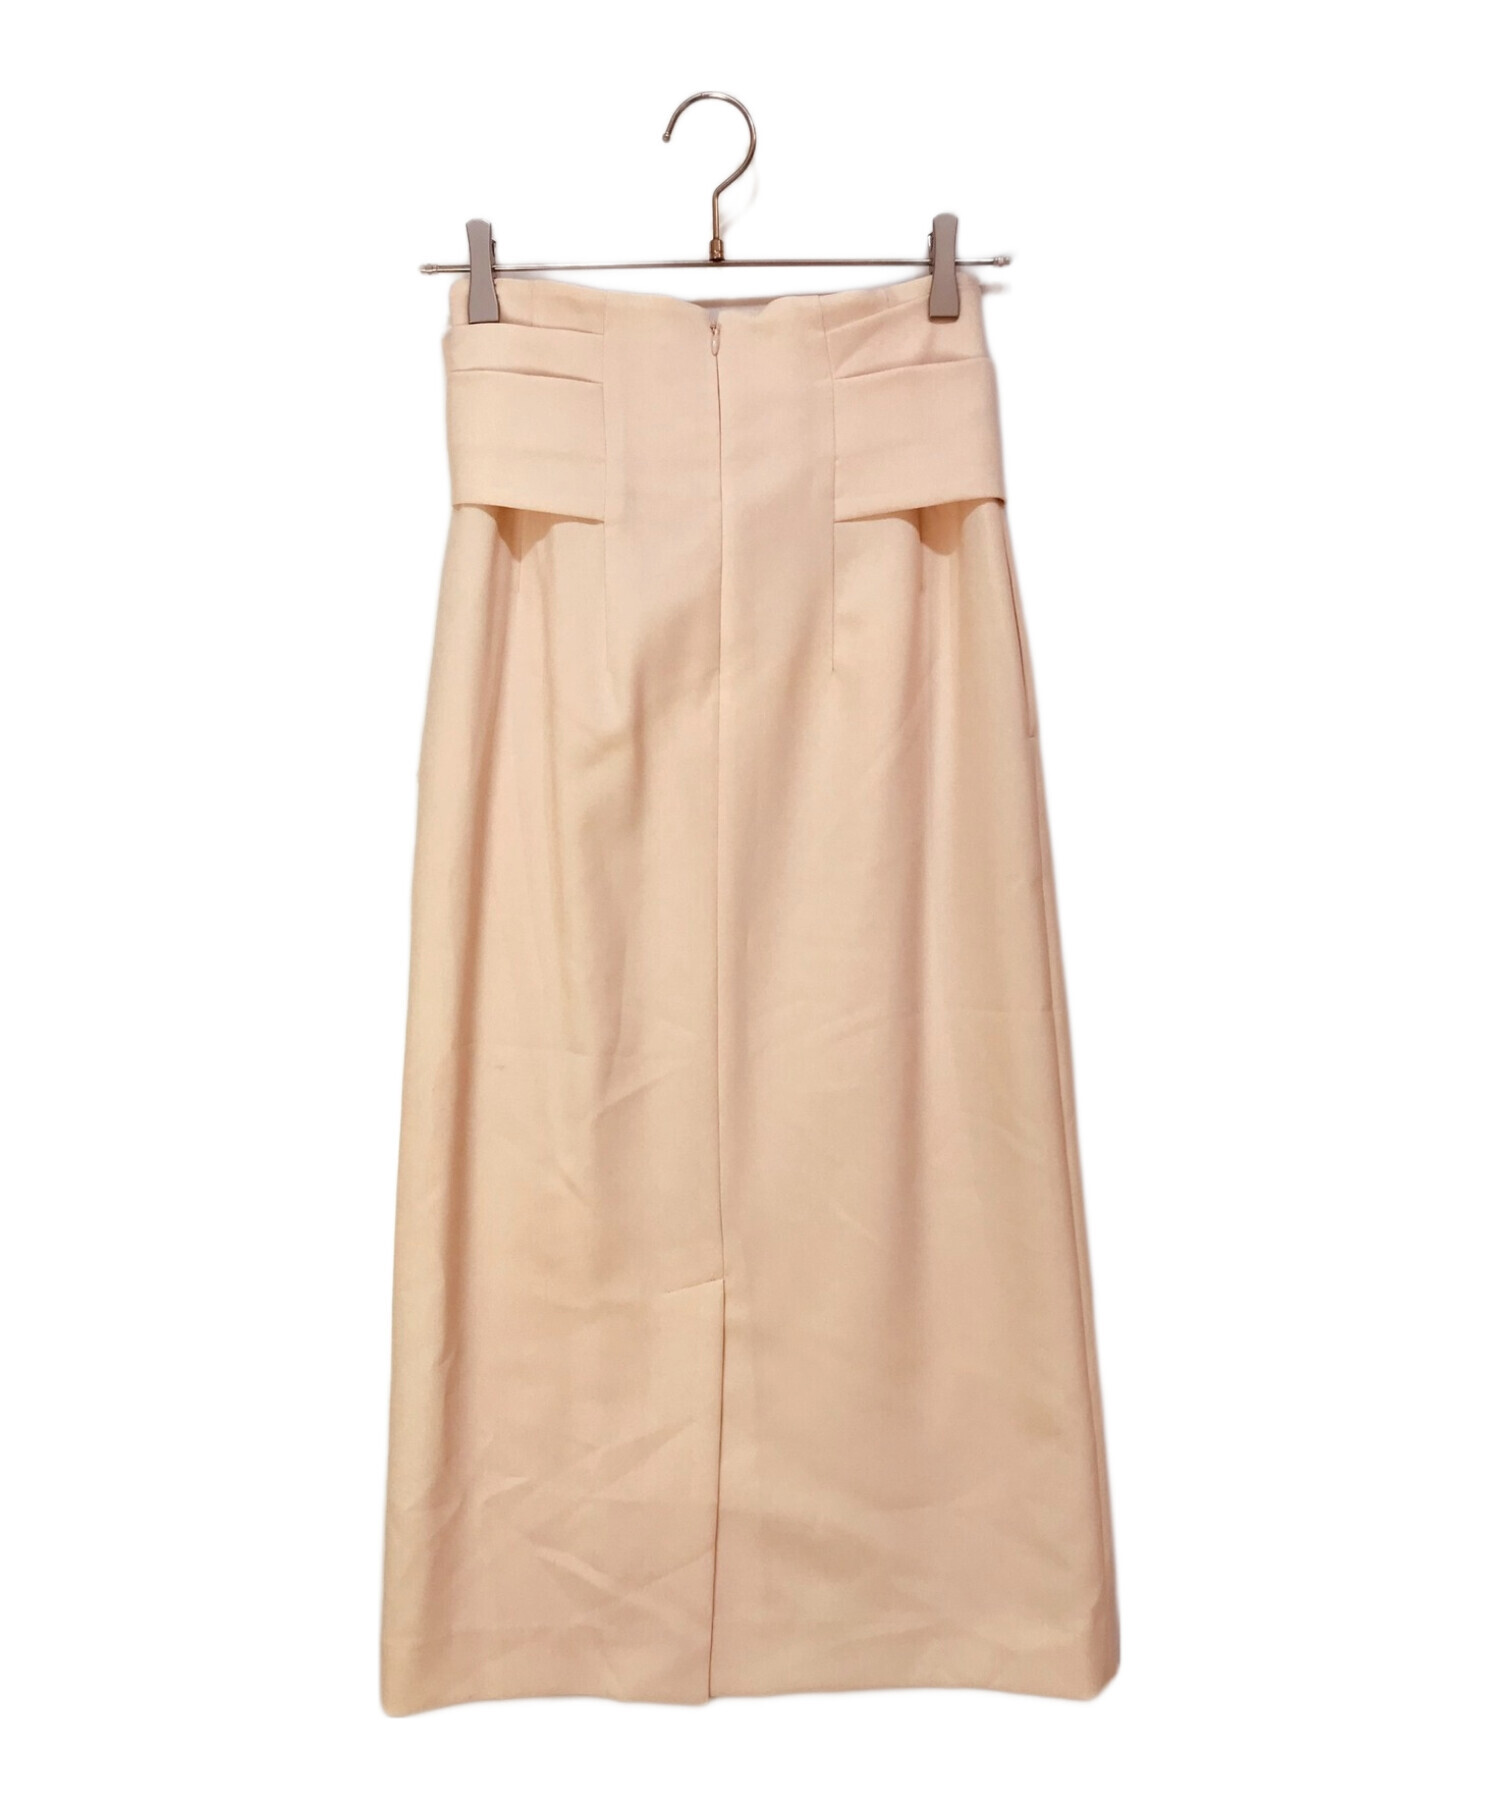 CELFORD (セルフォード) ウエストリボンタイトスカート ピンク サイズ:36